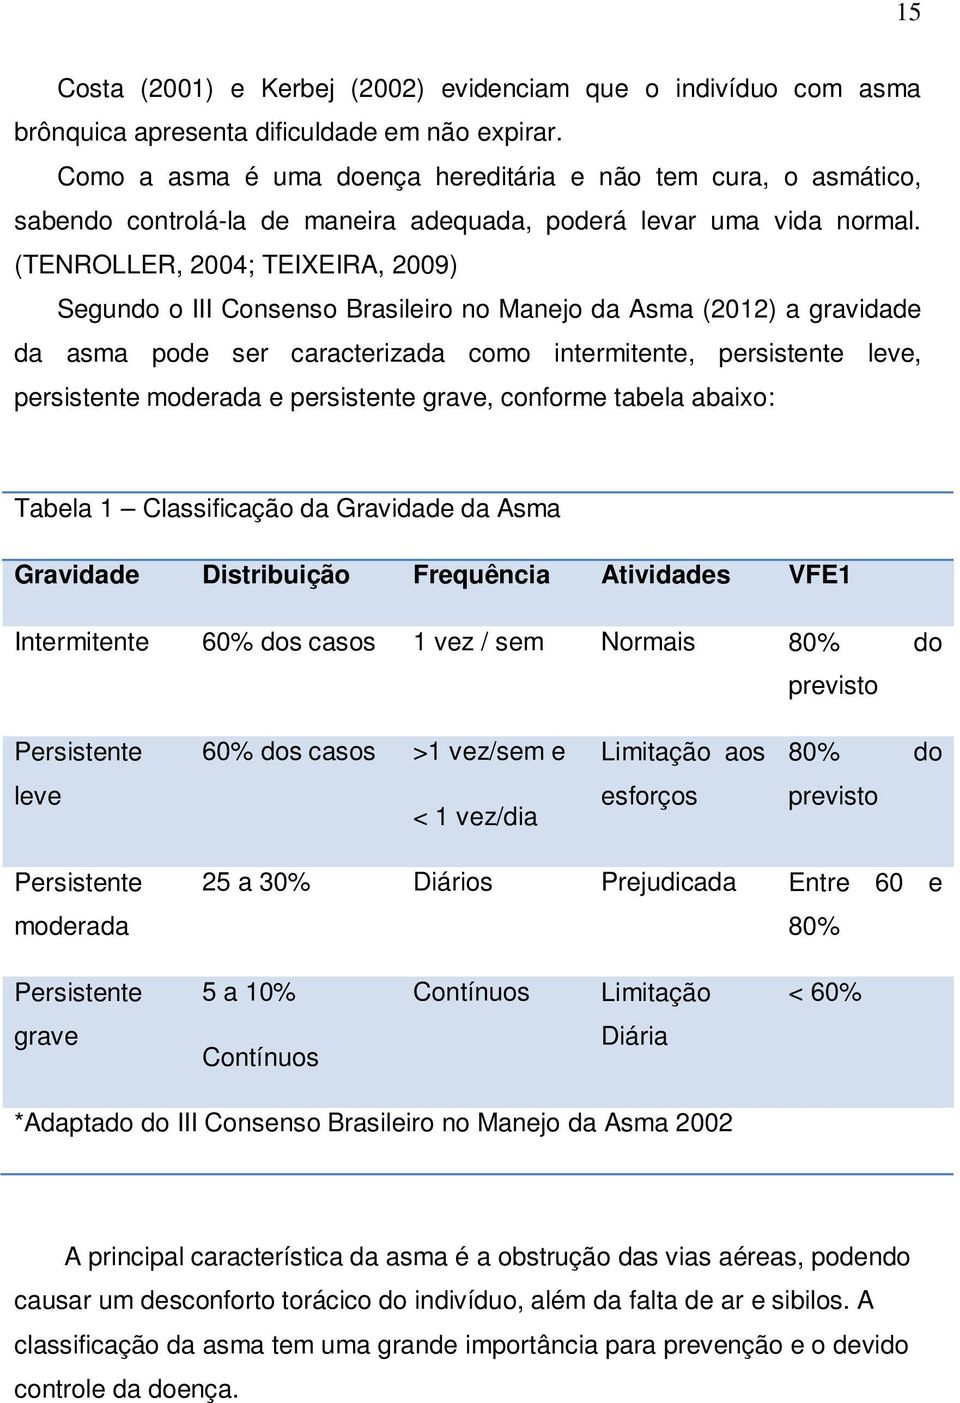 (TENROLLER, 2004; TEIXEIRA, 2009) Segundo o III Consenso Brasileiro no Manejo da Asma (2012) a gravidade da asma pode ser caracterizada como intermitente, persistente leve, persistente moderada e